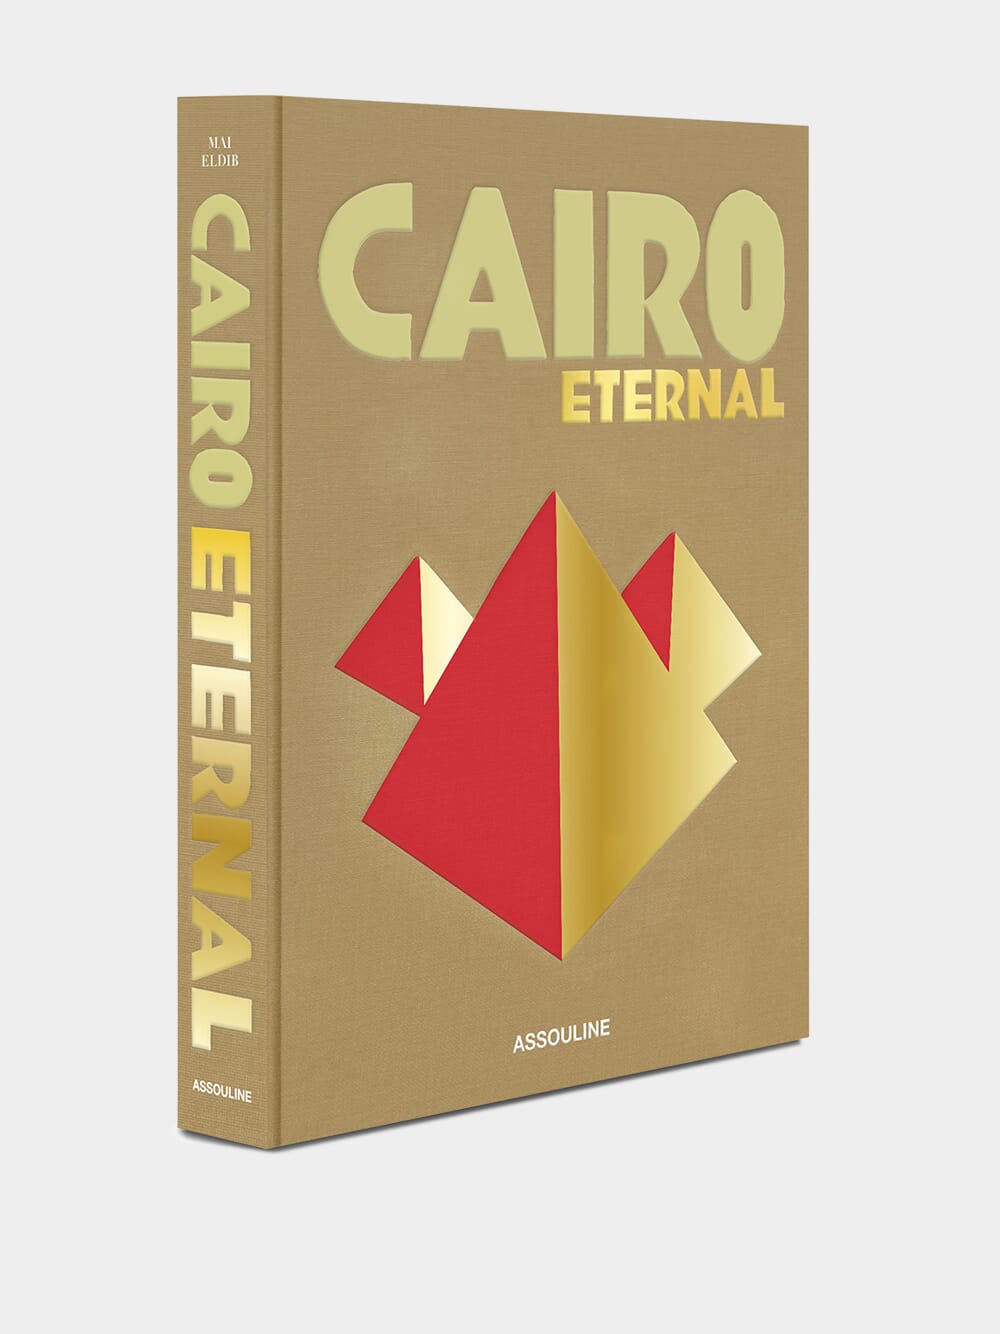 Cairo Eternal